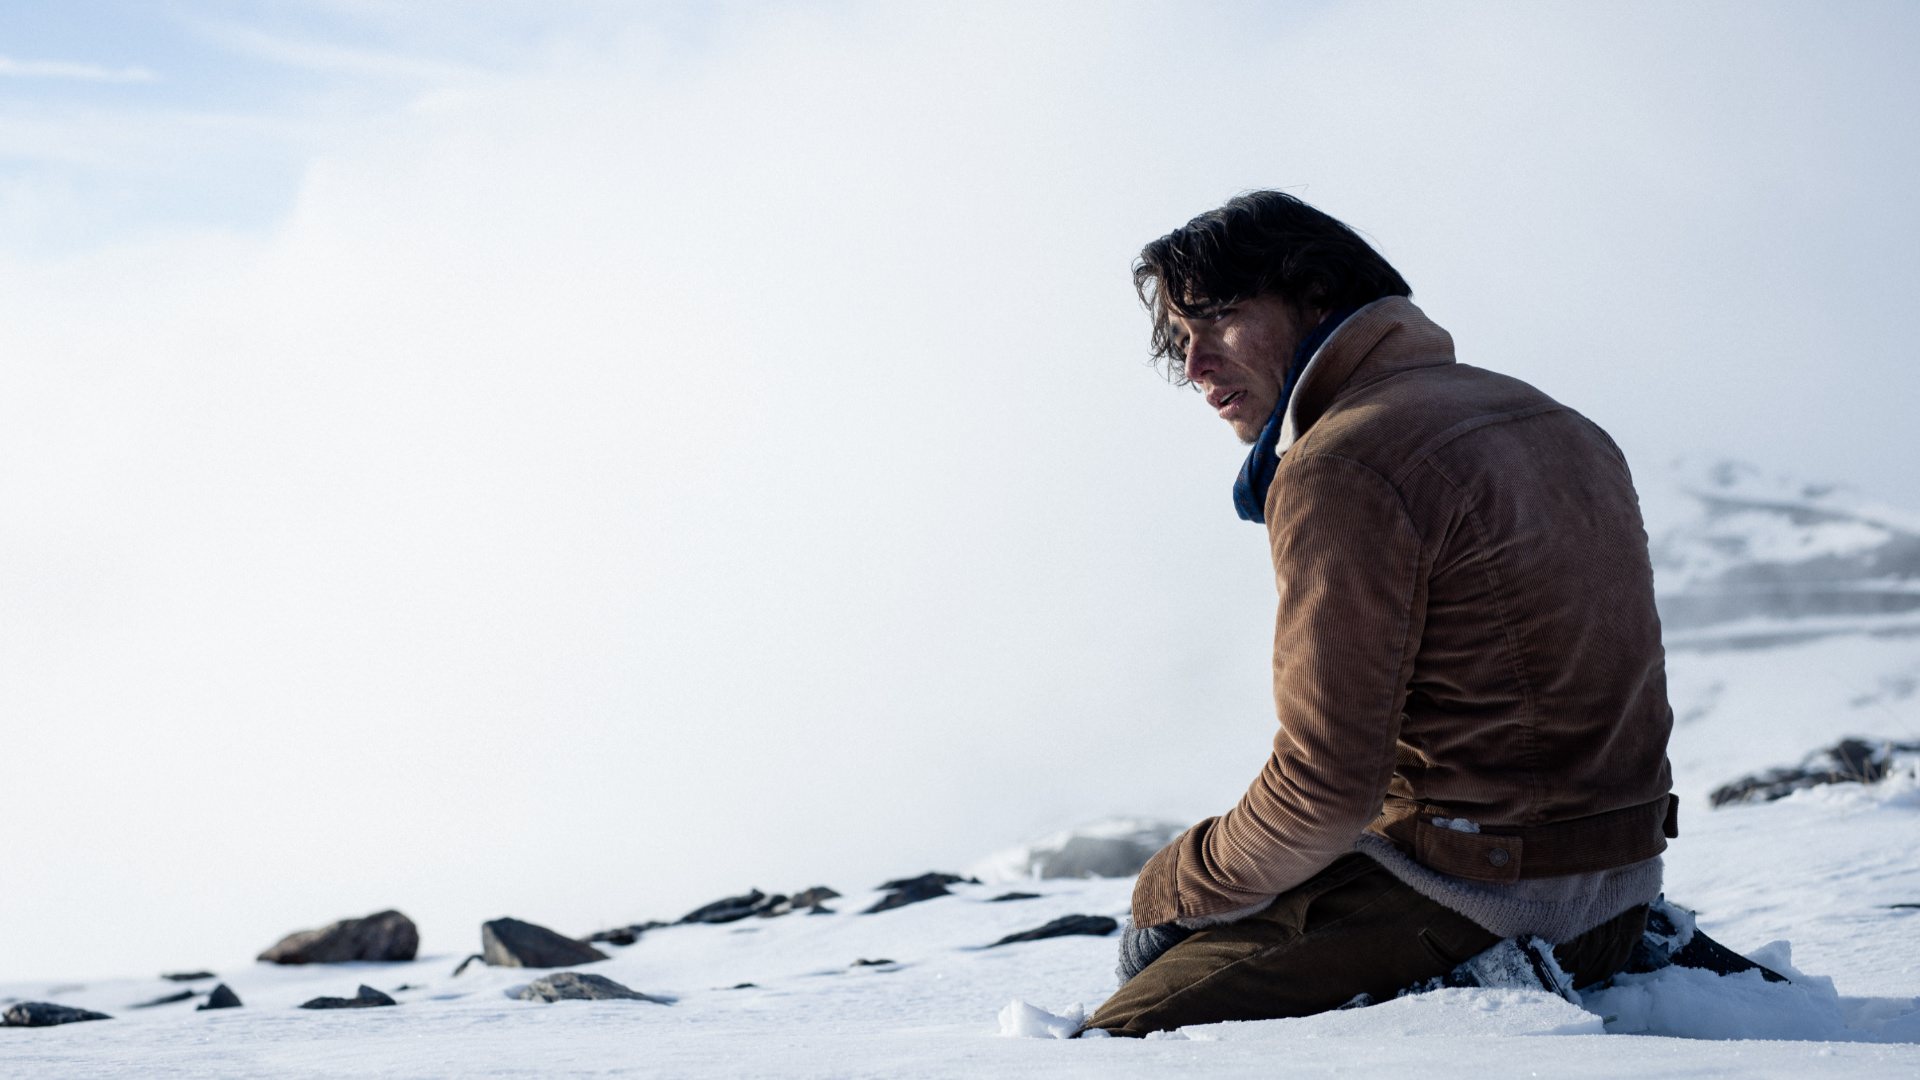 سقوط هواپیما در کوهستان در تریلر جدید فیلم Society of the Snow نتفلیکس